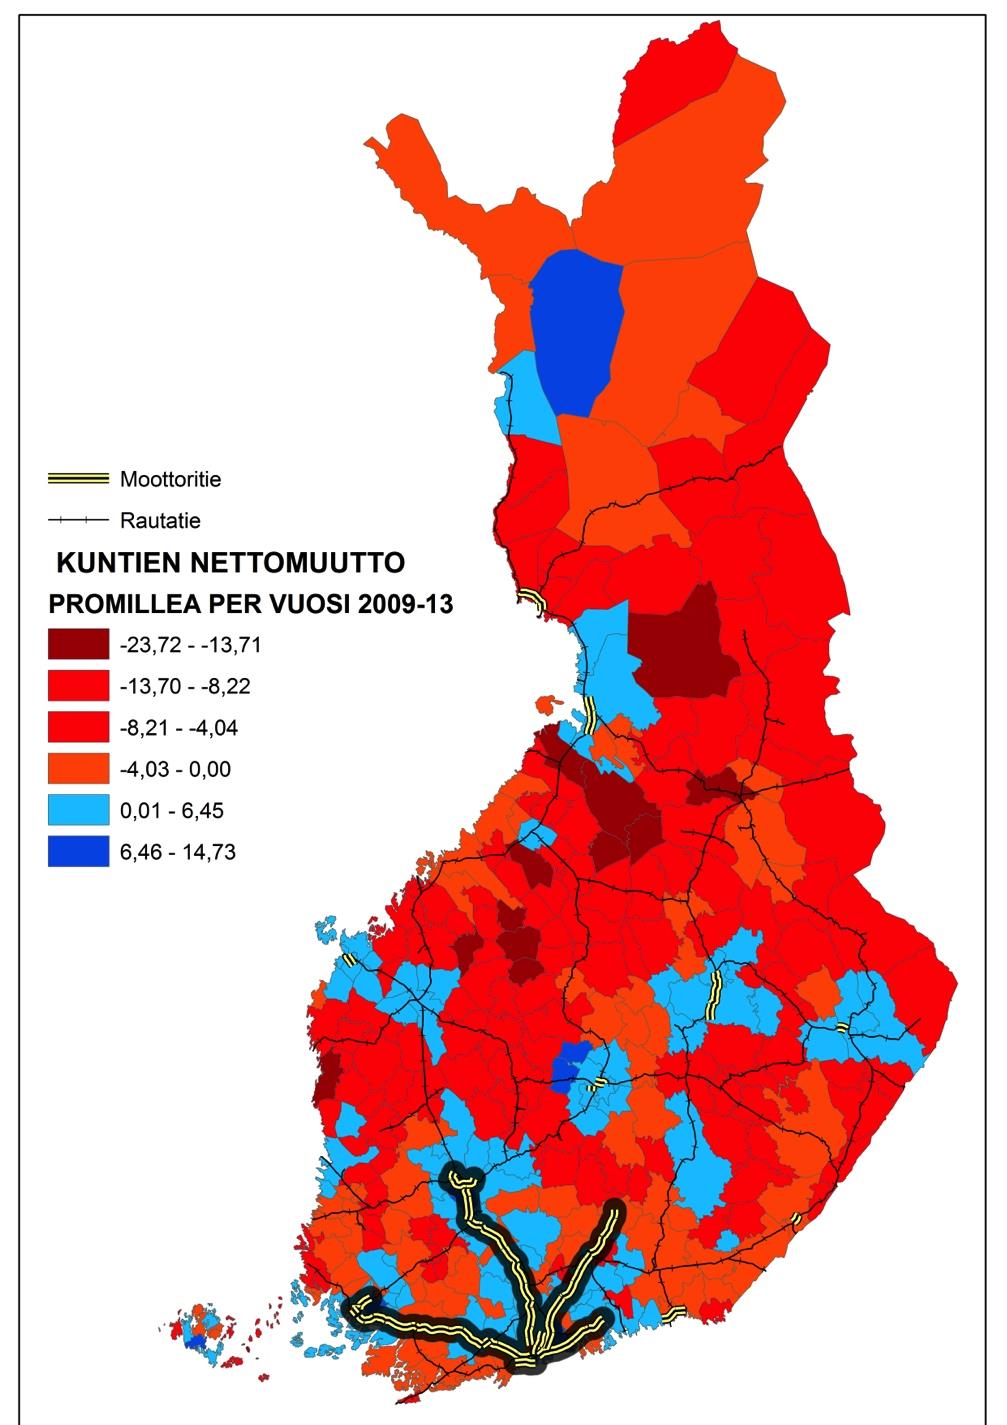 KUNTIEN NETTOMUUTON JA LIIKENNEKÄYTÄVIEN VÄLINEN YHTEYS Muuttovoittoa sai kuntien välisestä muuttoliikkeestä keskimäärin joka kolmas kunta (104/320) vuosina 2009-2013.